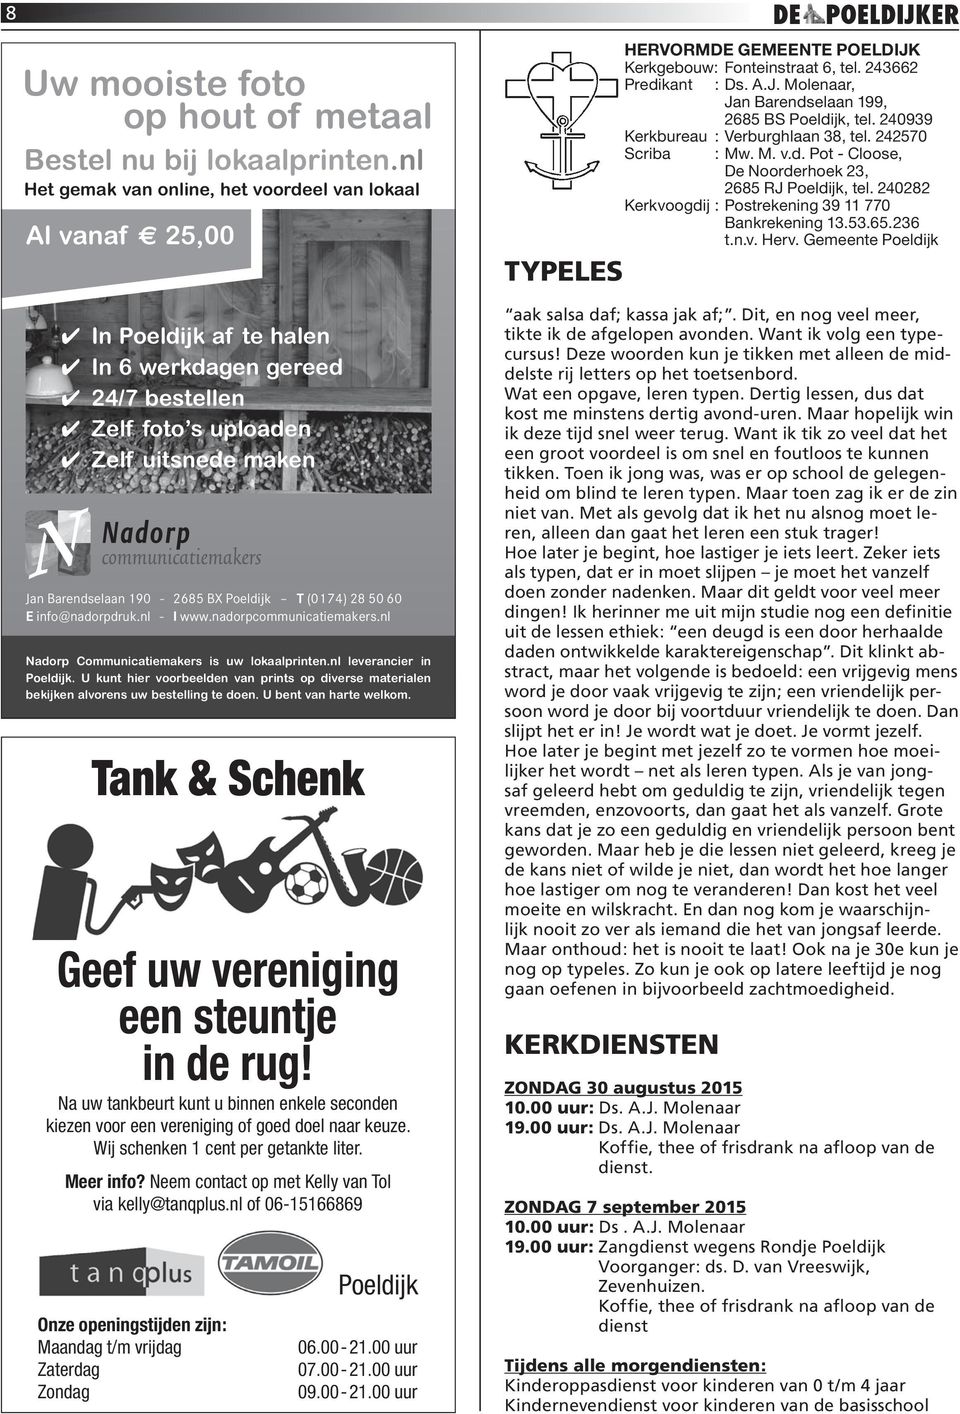 Poeldijk T (0174) 28 50 60 E info@nadorpdruk.nl - I www.nadorpcommunicatiemakers.nl Nadorp Communicatiemakers is uw lokaalprinten.nl leverancier in Poeldijk.